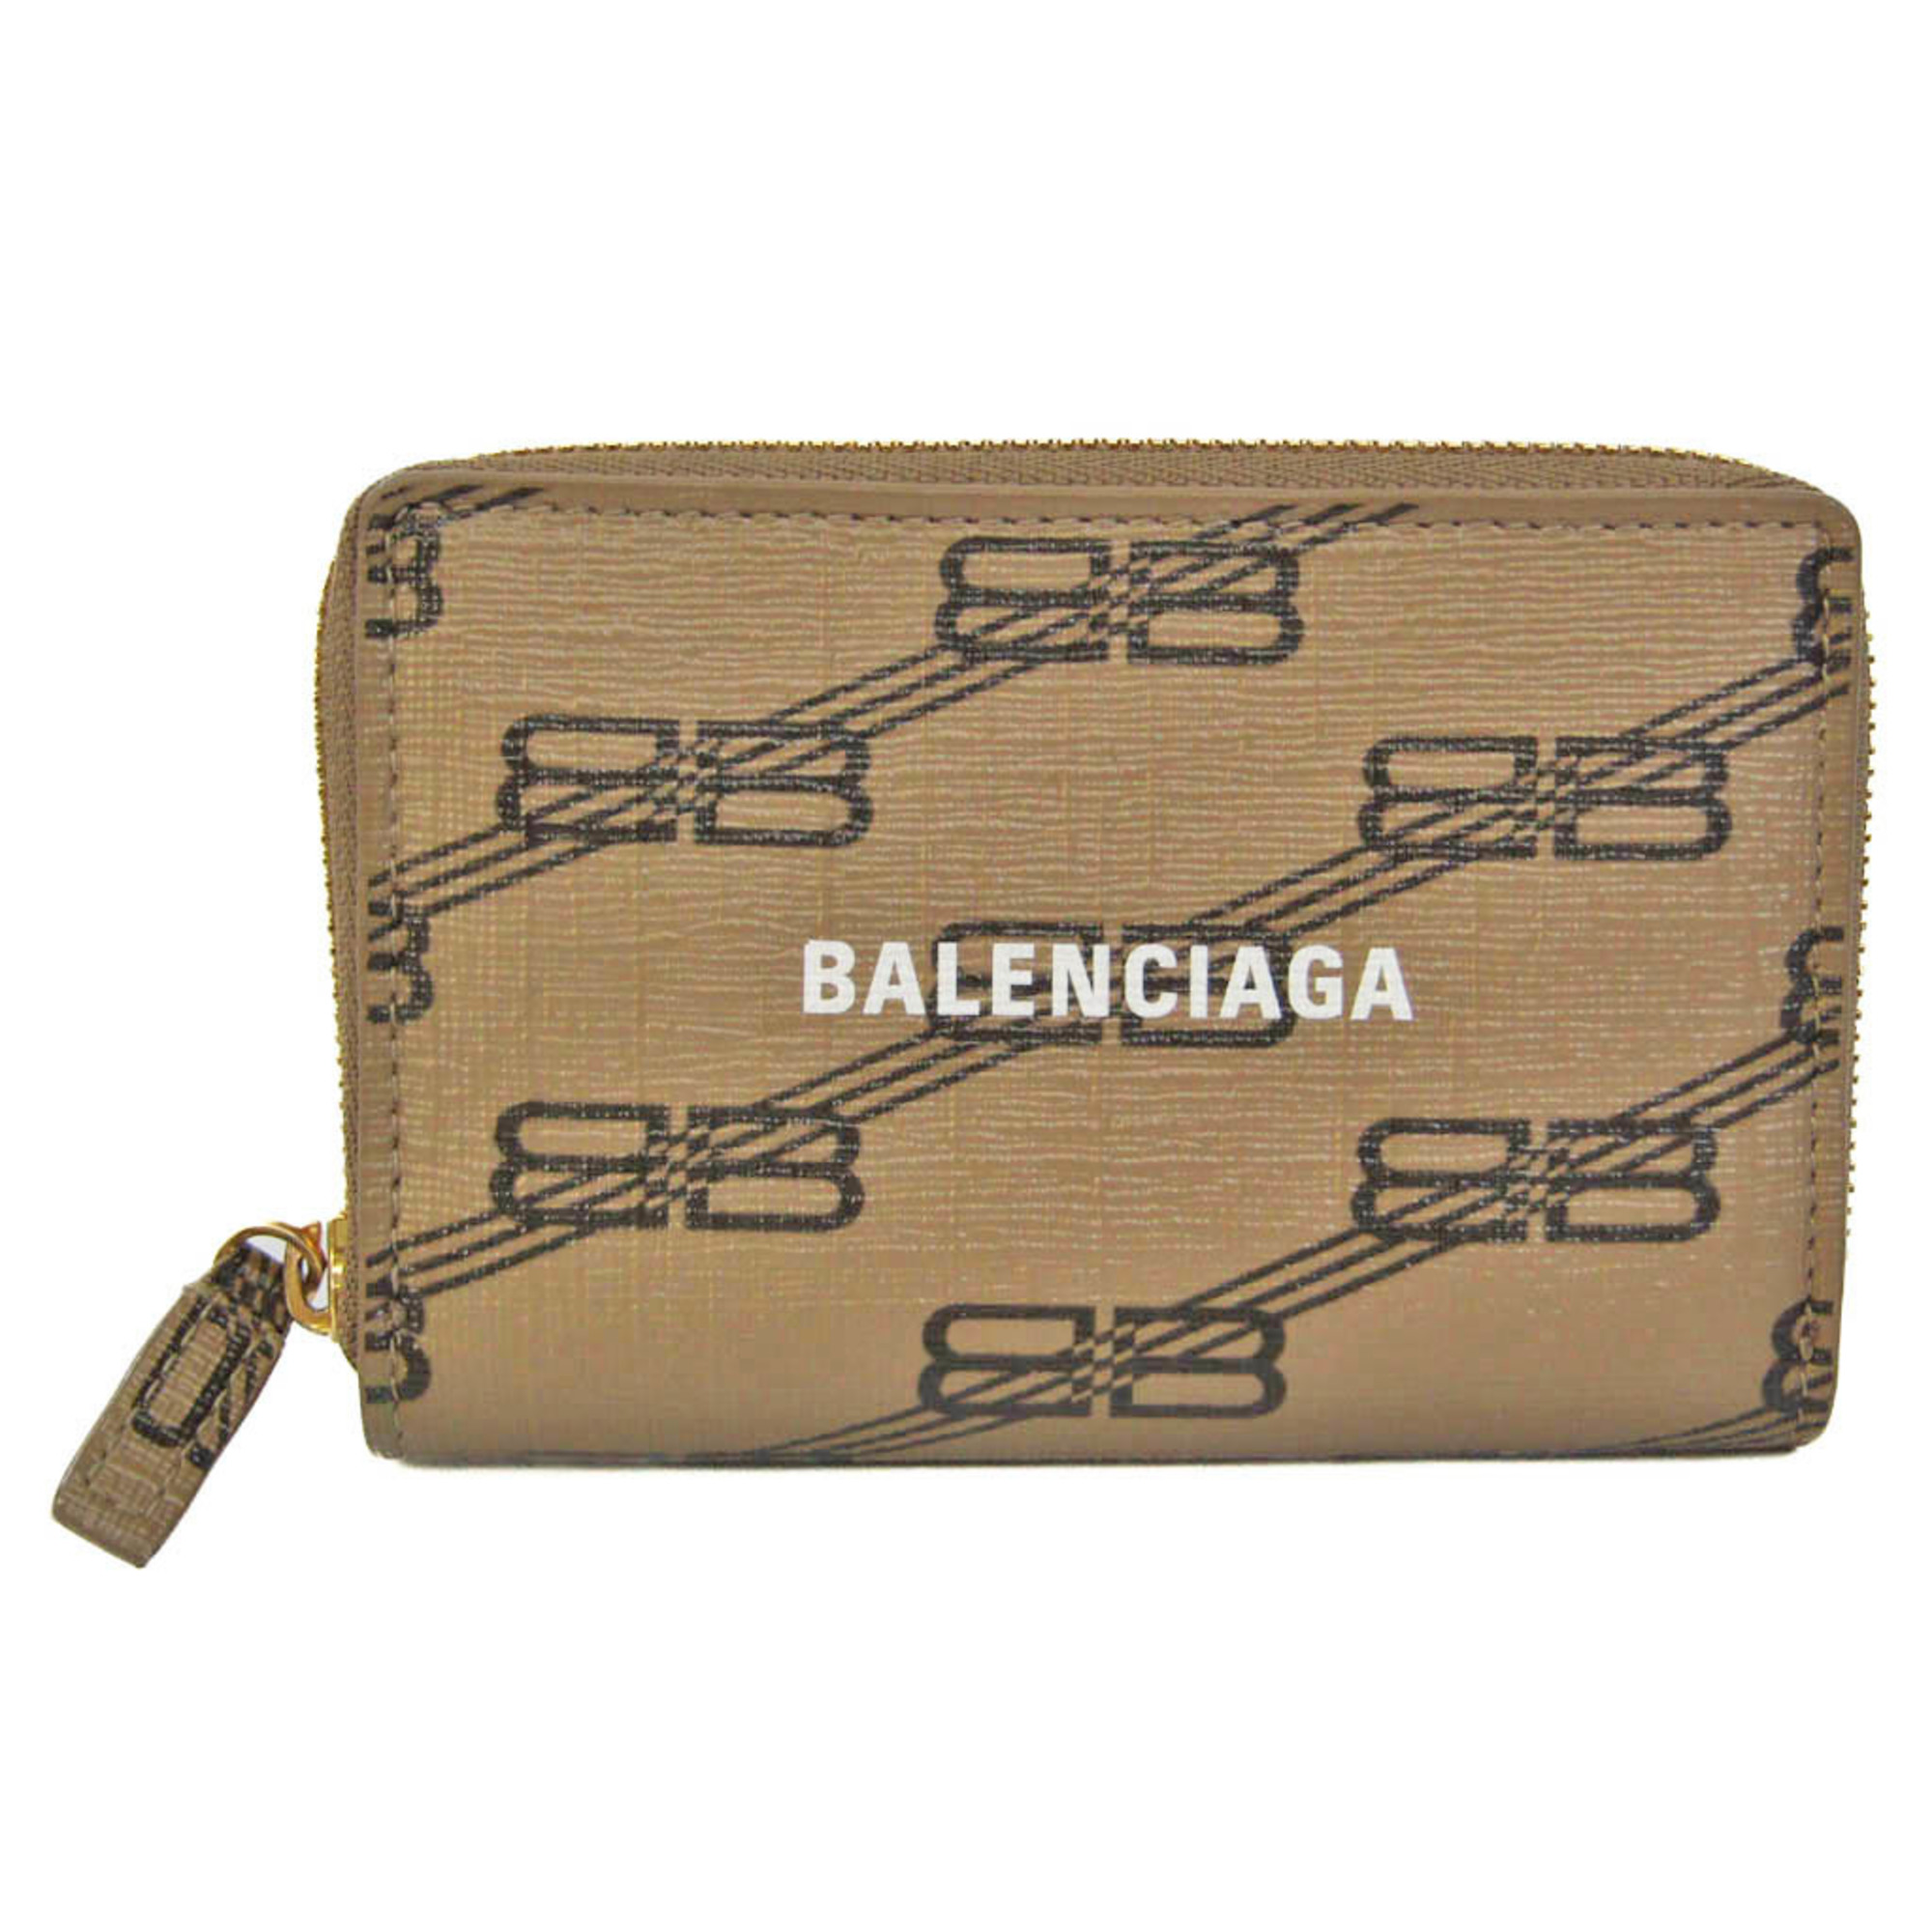 バレンシアガ(Balenciaga) エブリディ 616911 レザー カードケース ブラウン